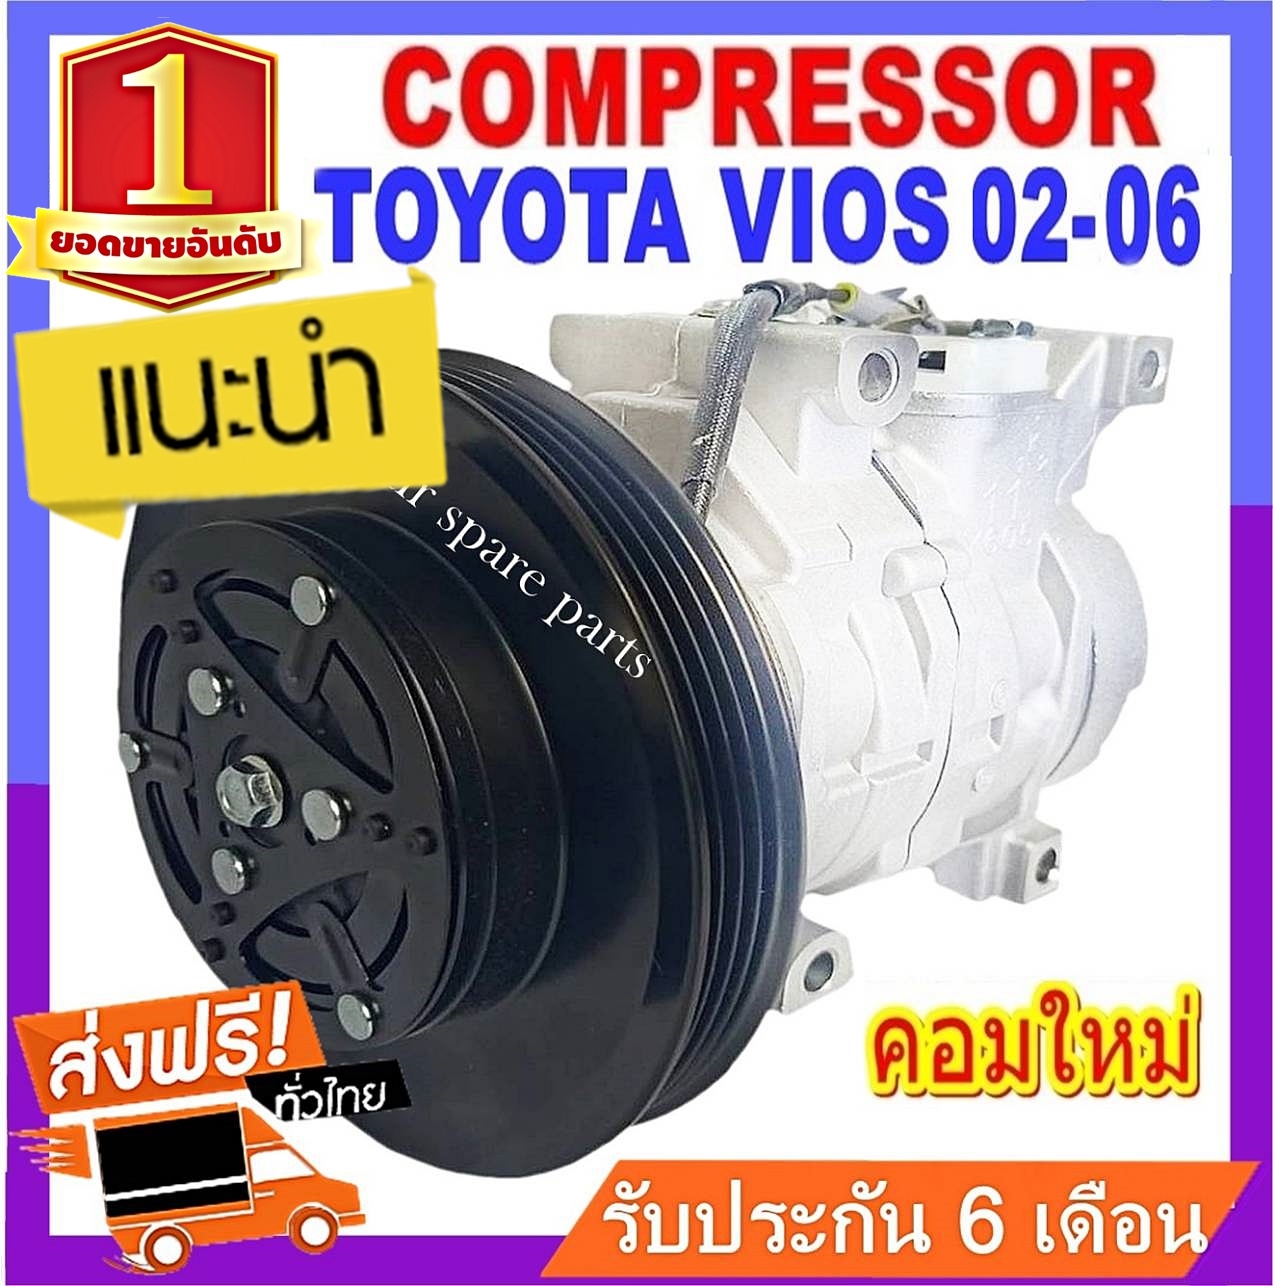 ของใหม่!! คอมแอร์ TOYOTA VIOS 2002-2006 ( สายพาน 4PK ) โตโยต้า วีออส 02-06 คอมเพรสเซอร์แอร์ยนต์ (Compressor) สินค้าของใหม่100%